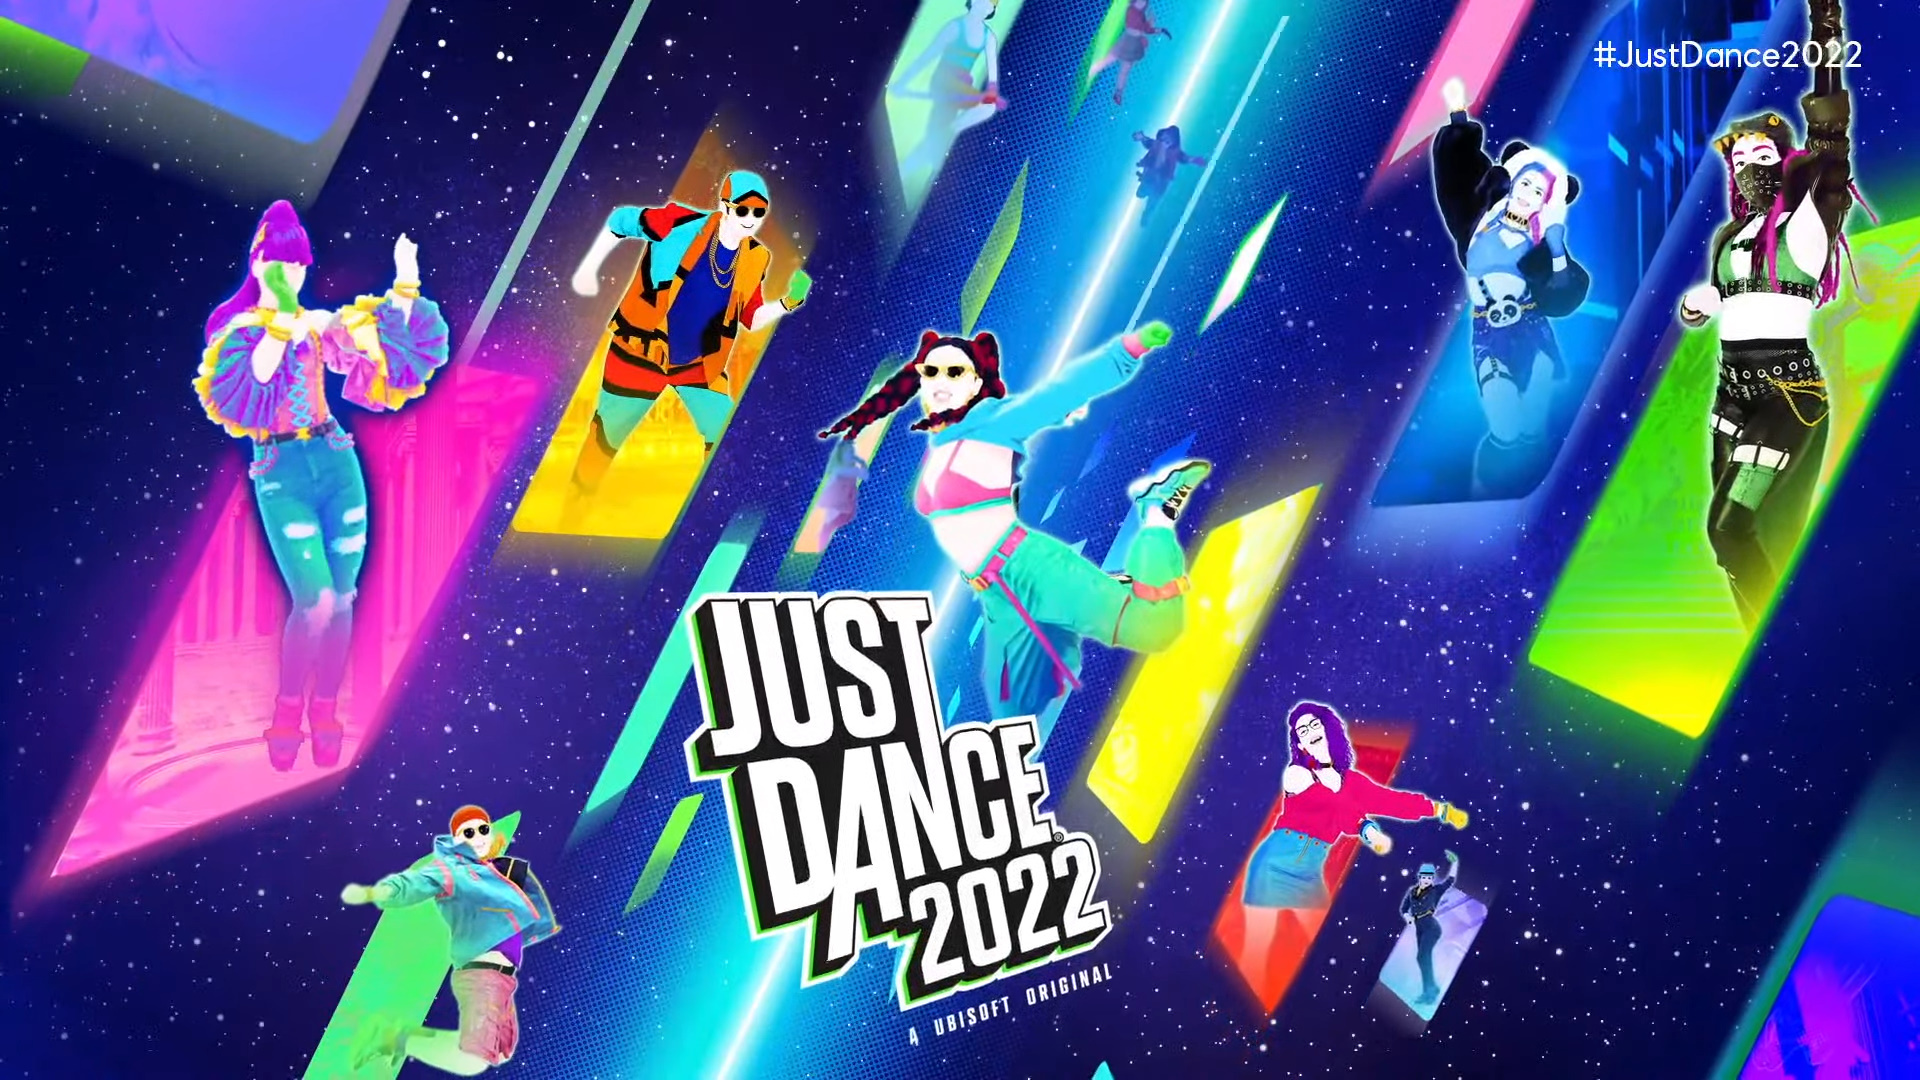 Just Dance 2022 (trilha sonora) - Playlist 